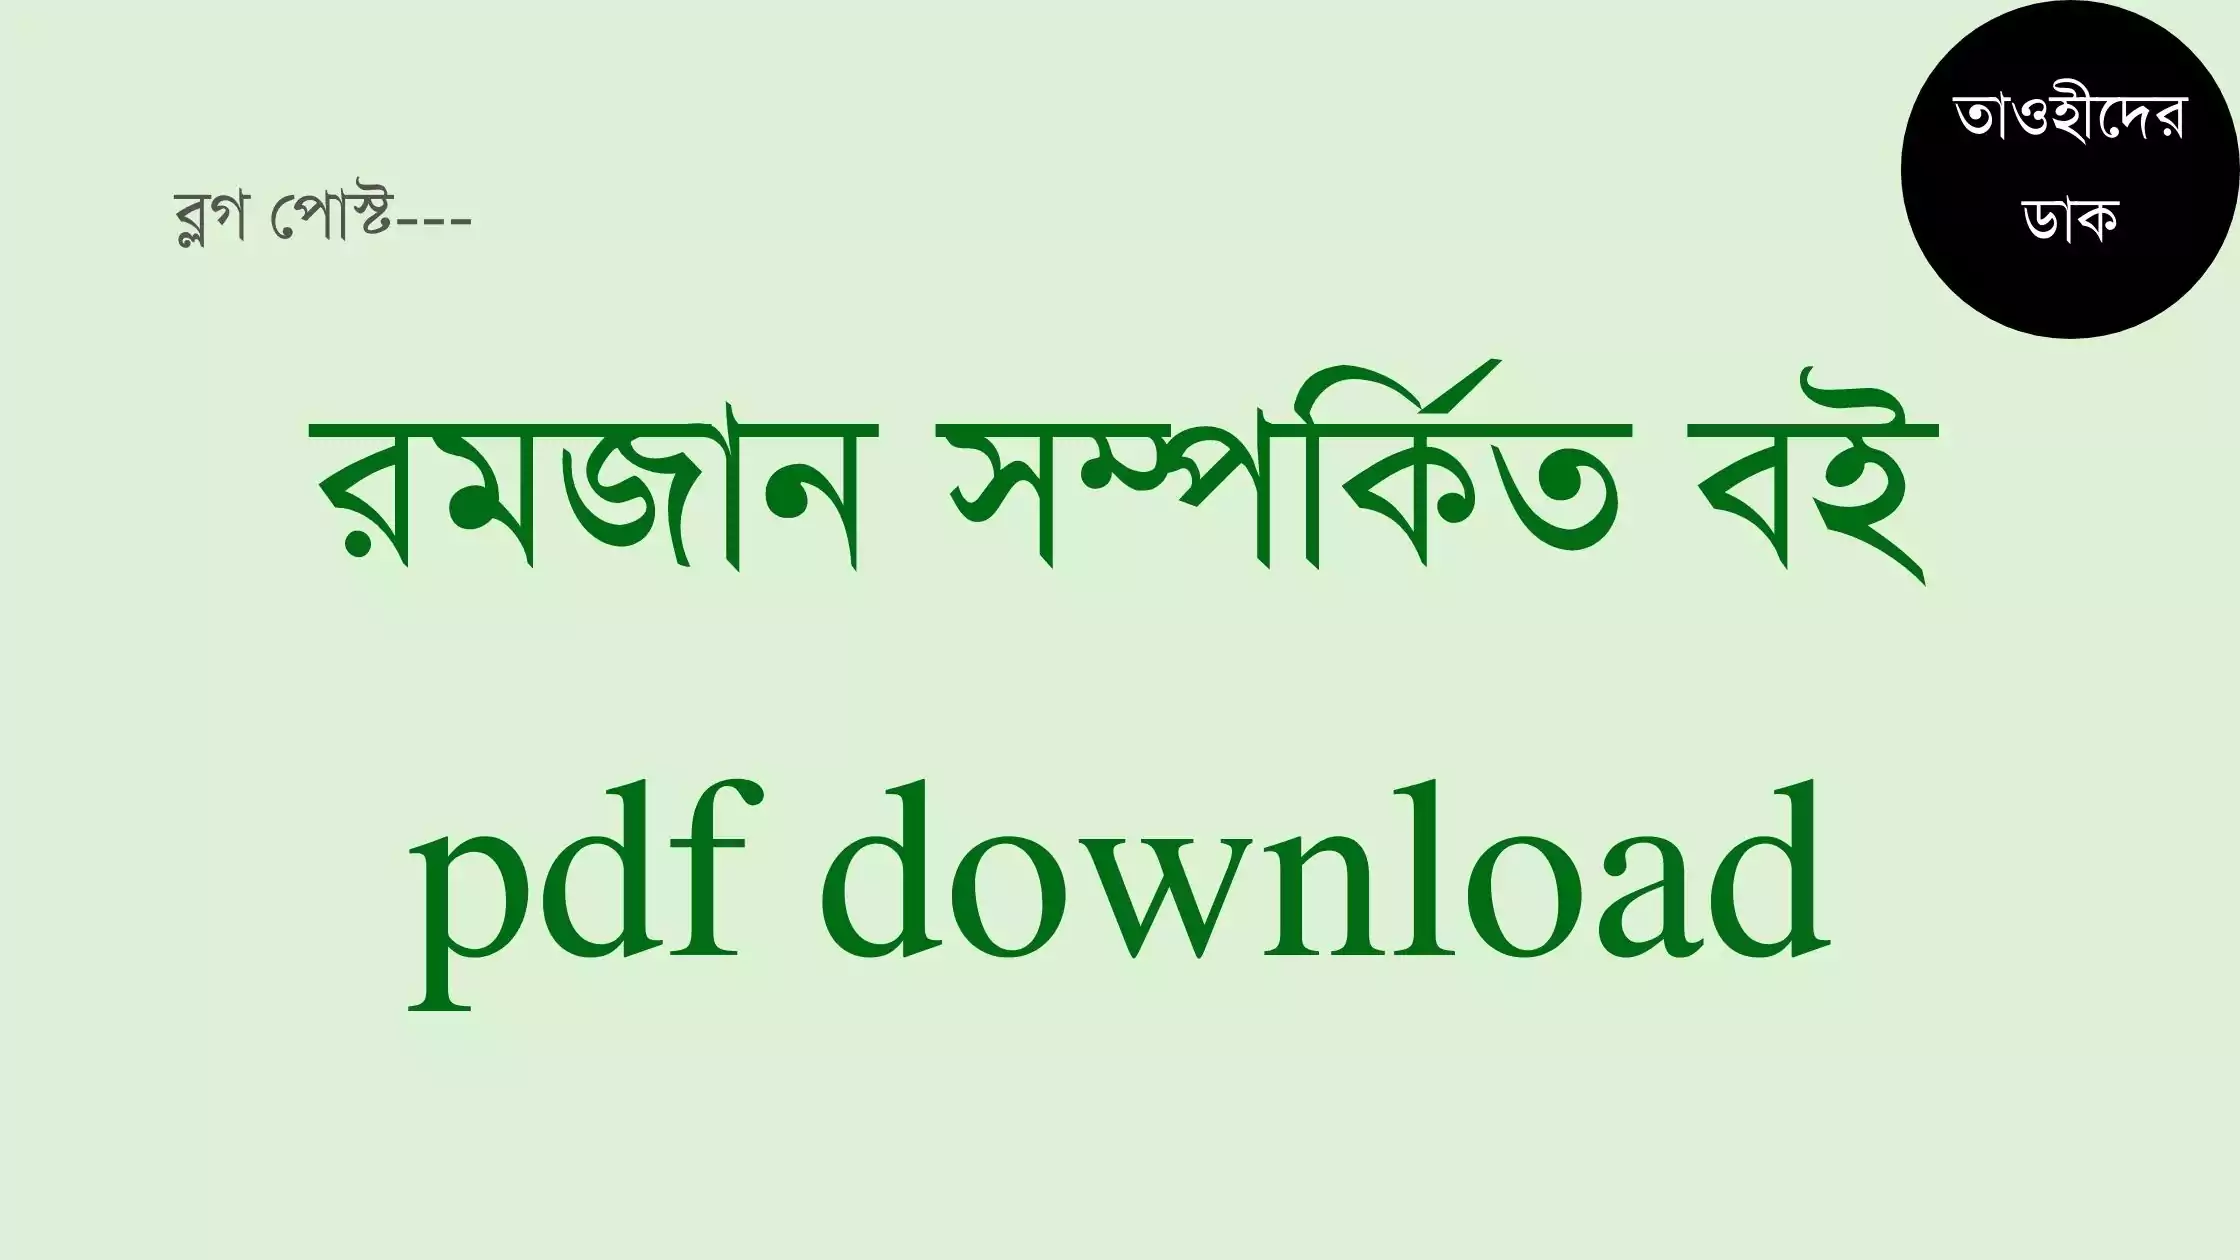 রমজান বিষয়ক বই pdf. রমজানের বই pdf download